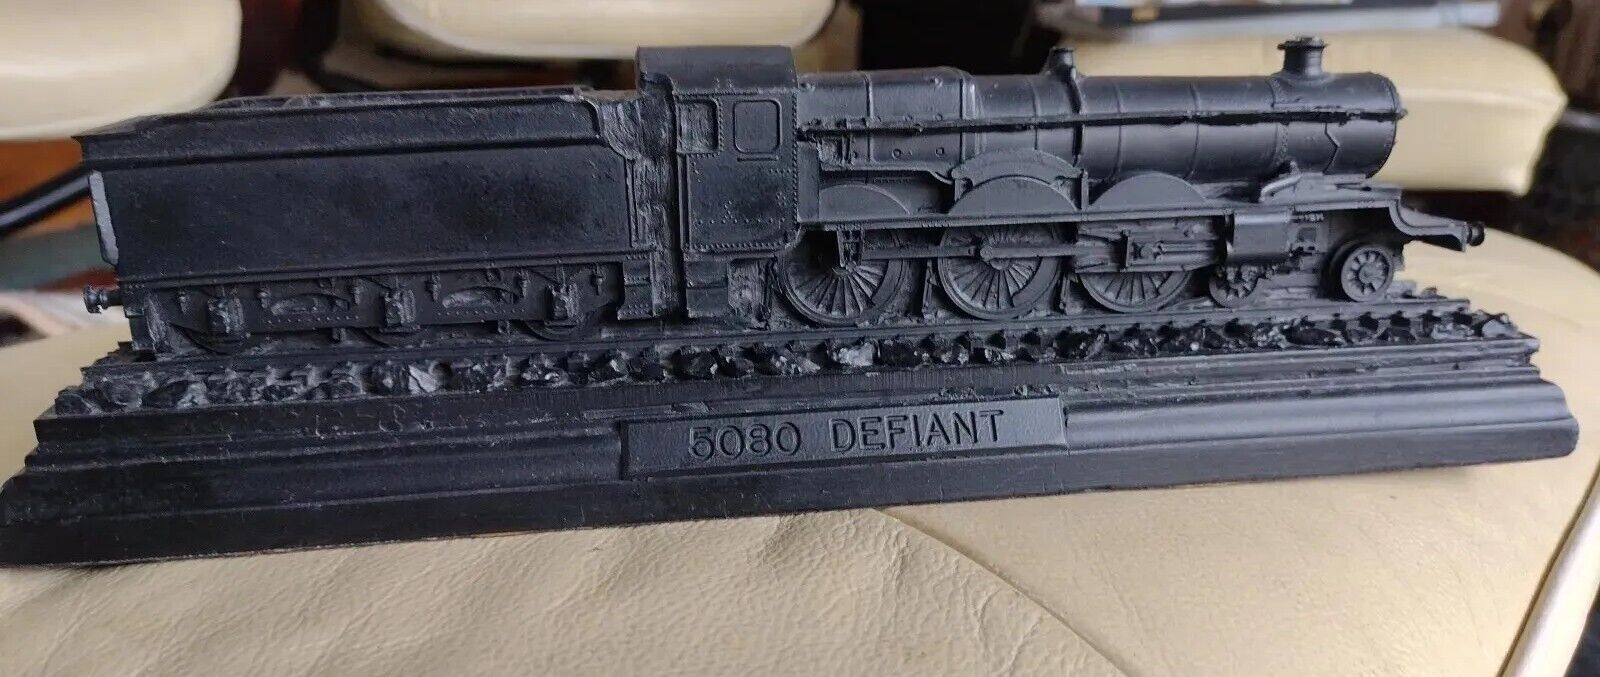 Train Solid Piece Of Coal 5080 Defiant